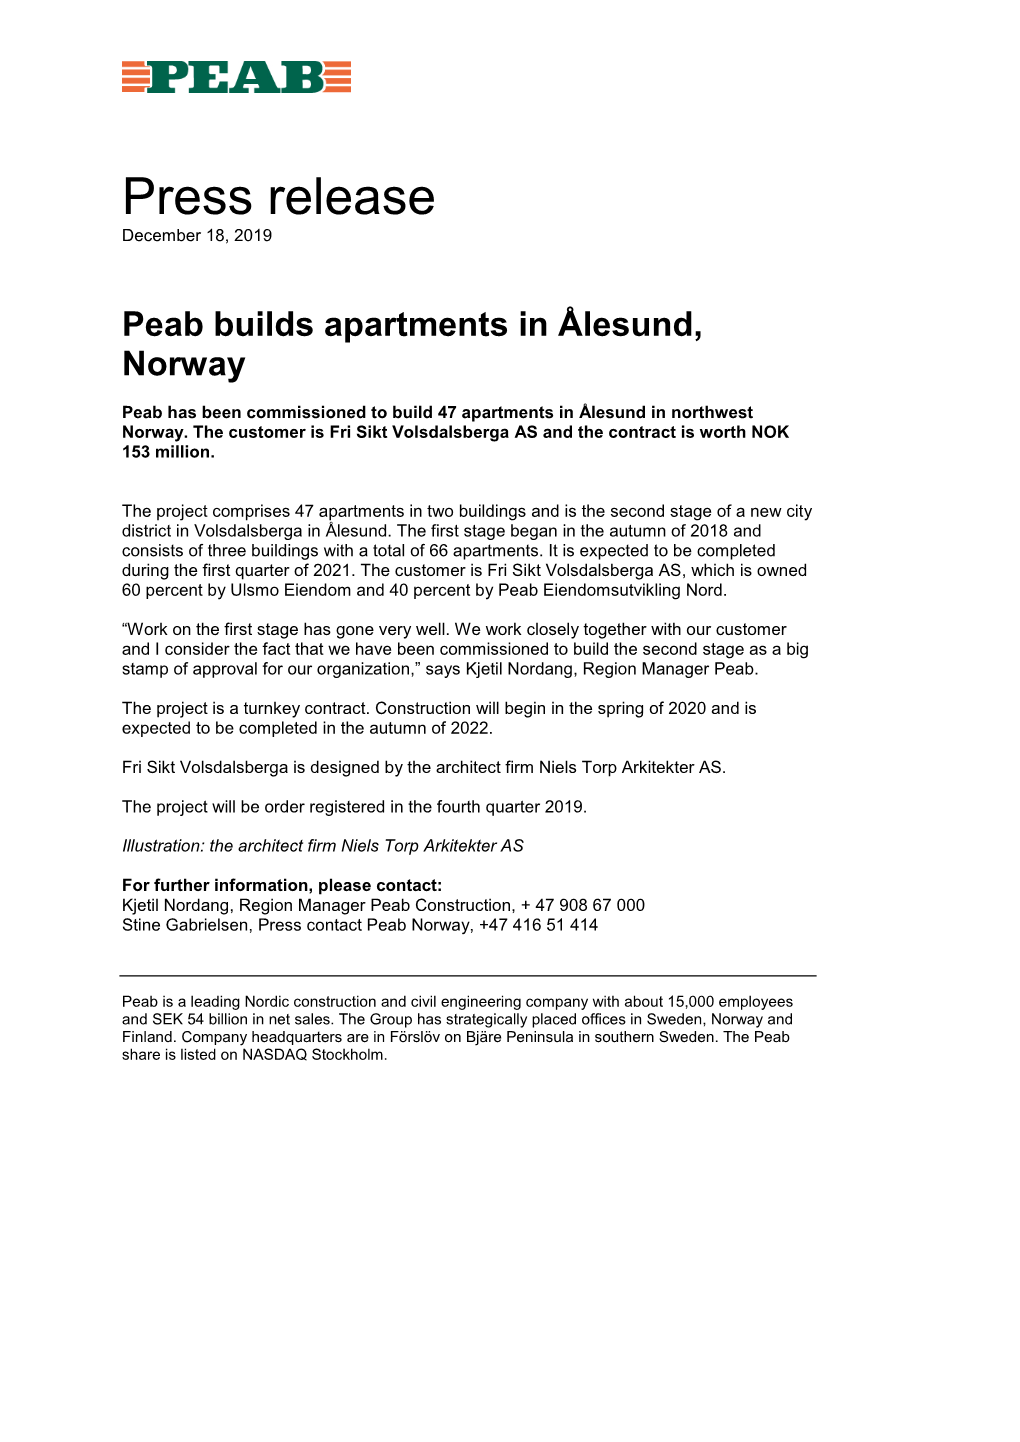 Peab Builds Apartments in Ålesund, Norway